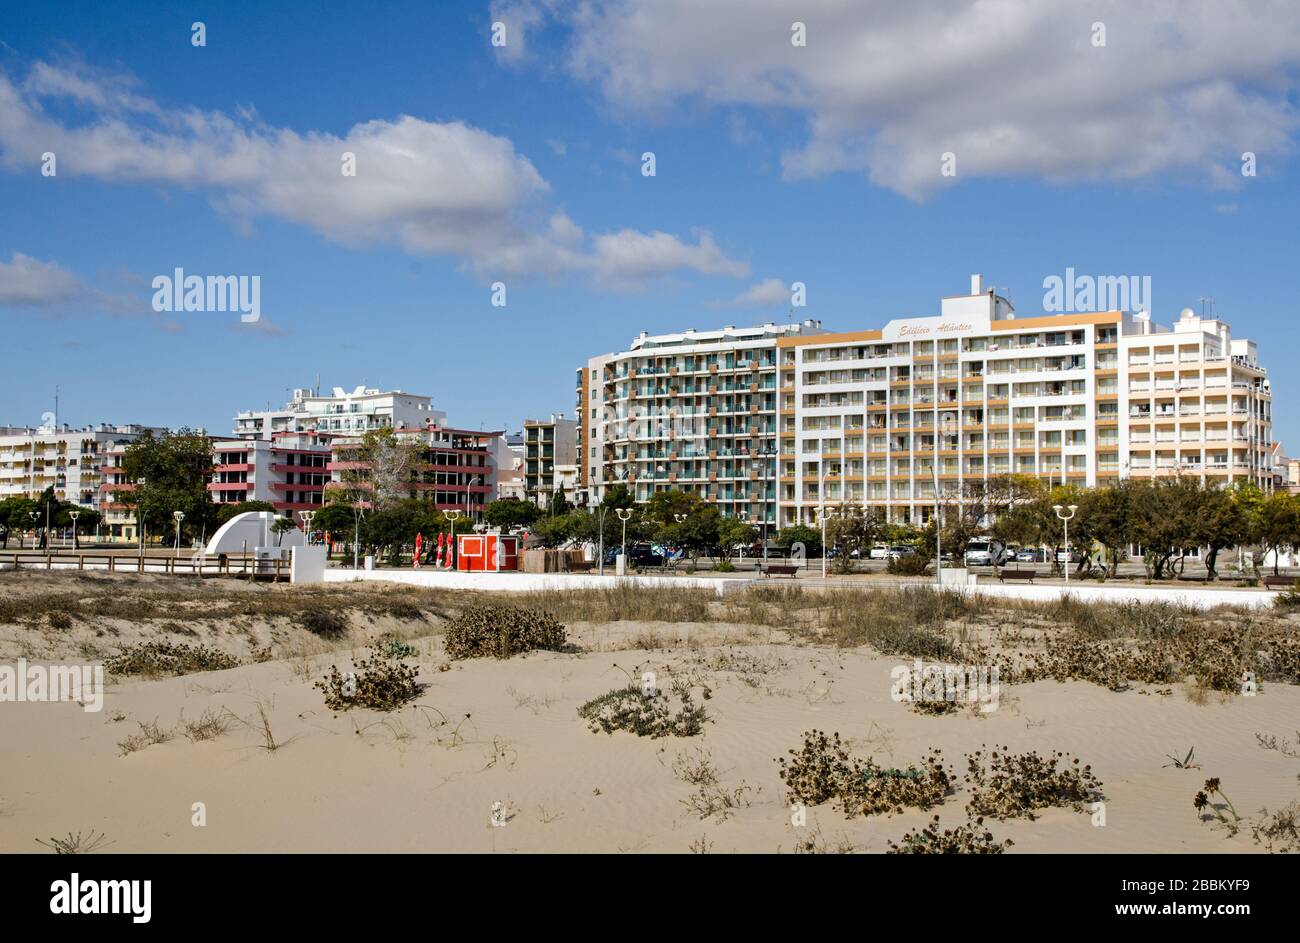 Monte Gordo, Portugal - 18. November 2019: Apartments mit Blick auf den sandigen Strand des Ferienortes Monte Gordo an der portugiesischen Algarve-Küste. Stockfoto